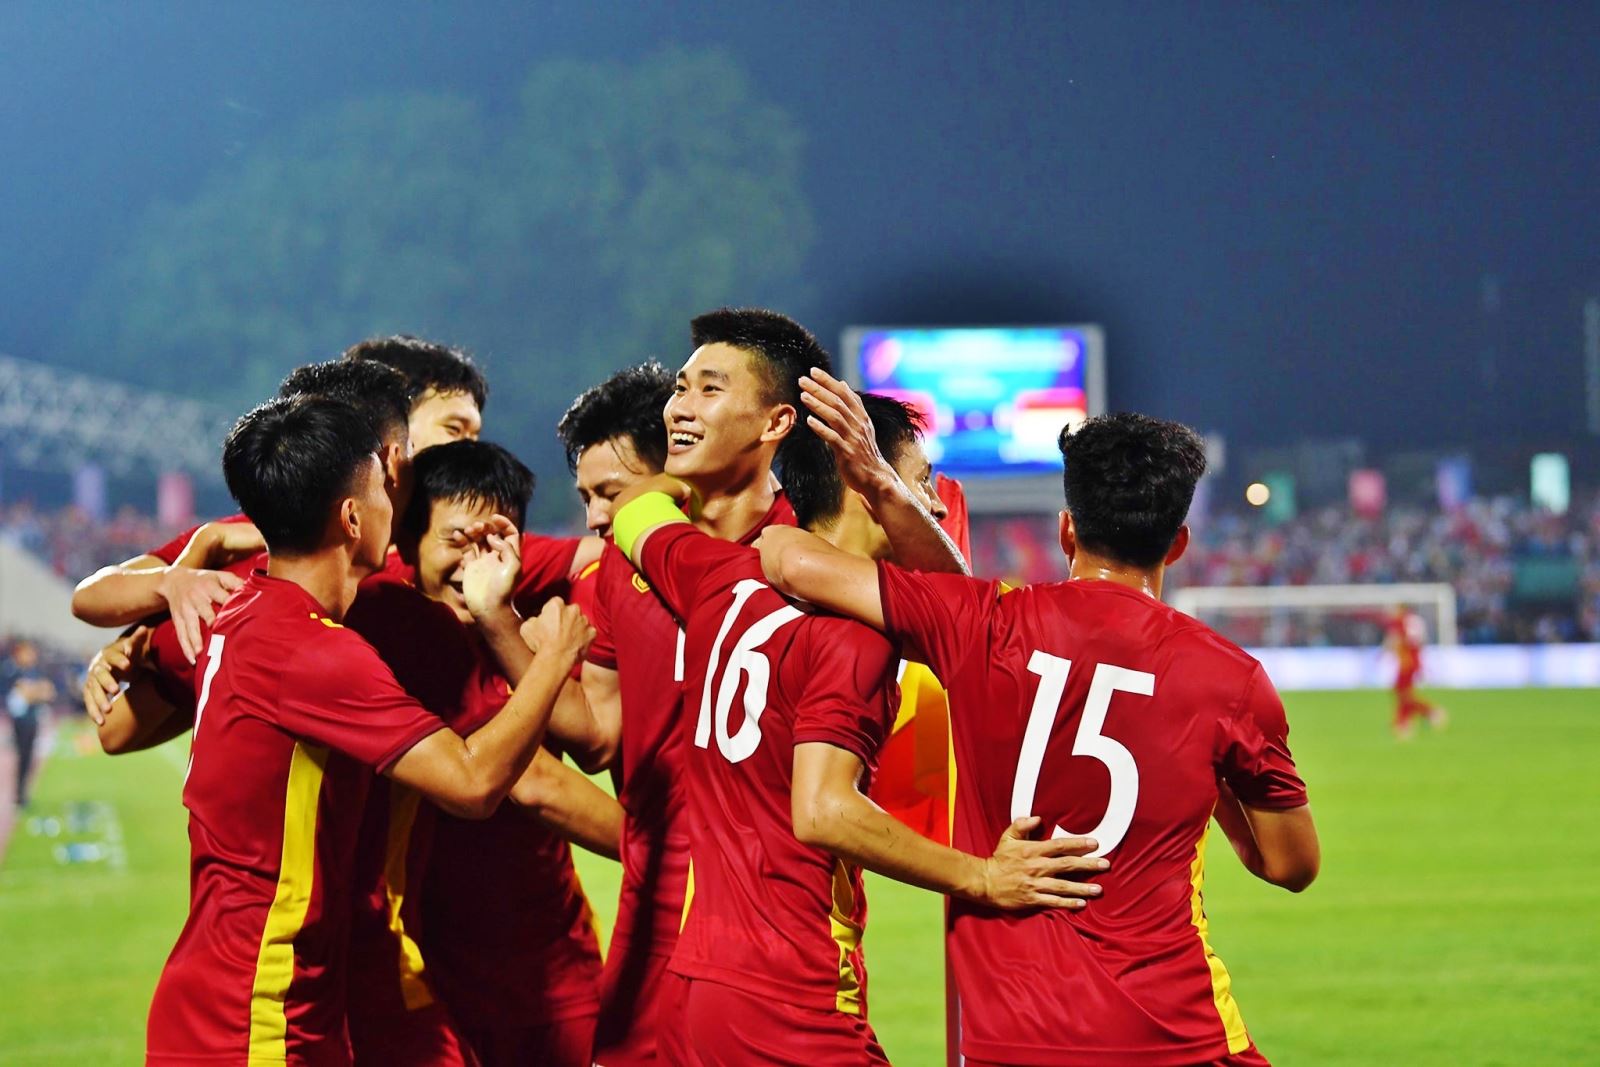 U23 Vietnam vs U23 Thailand: Which team is the 